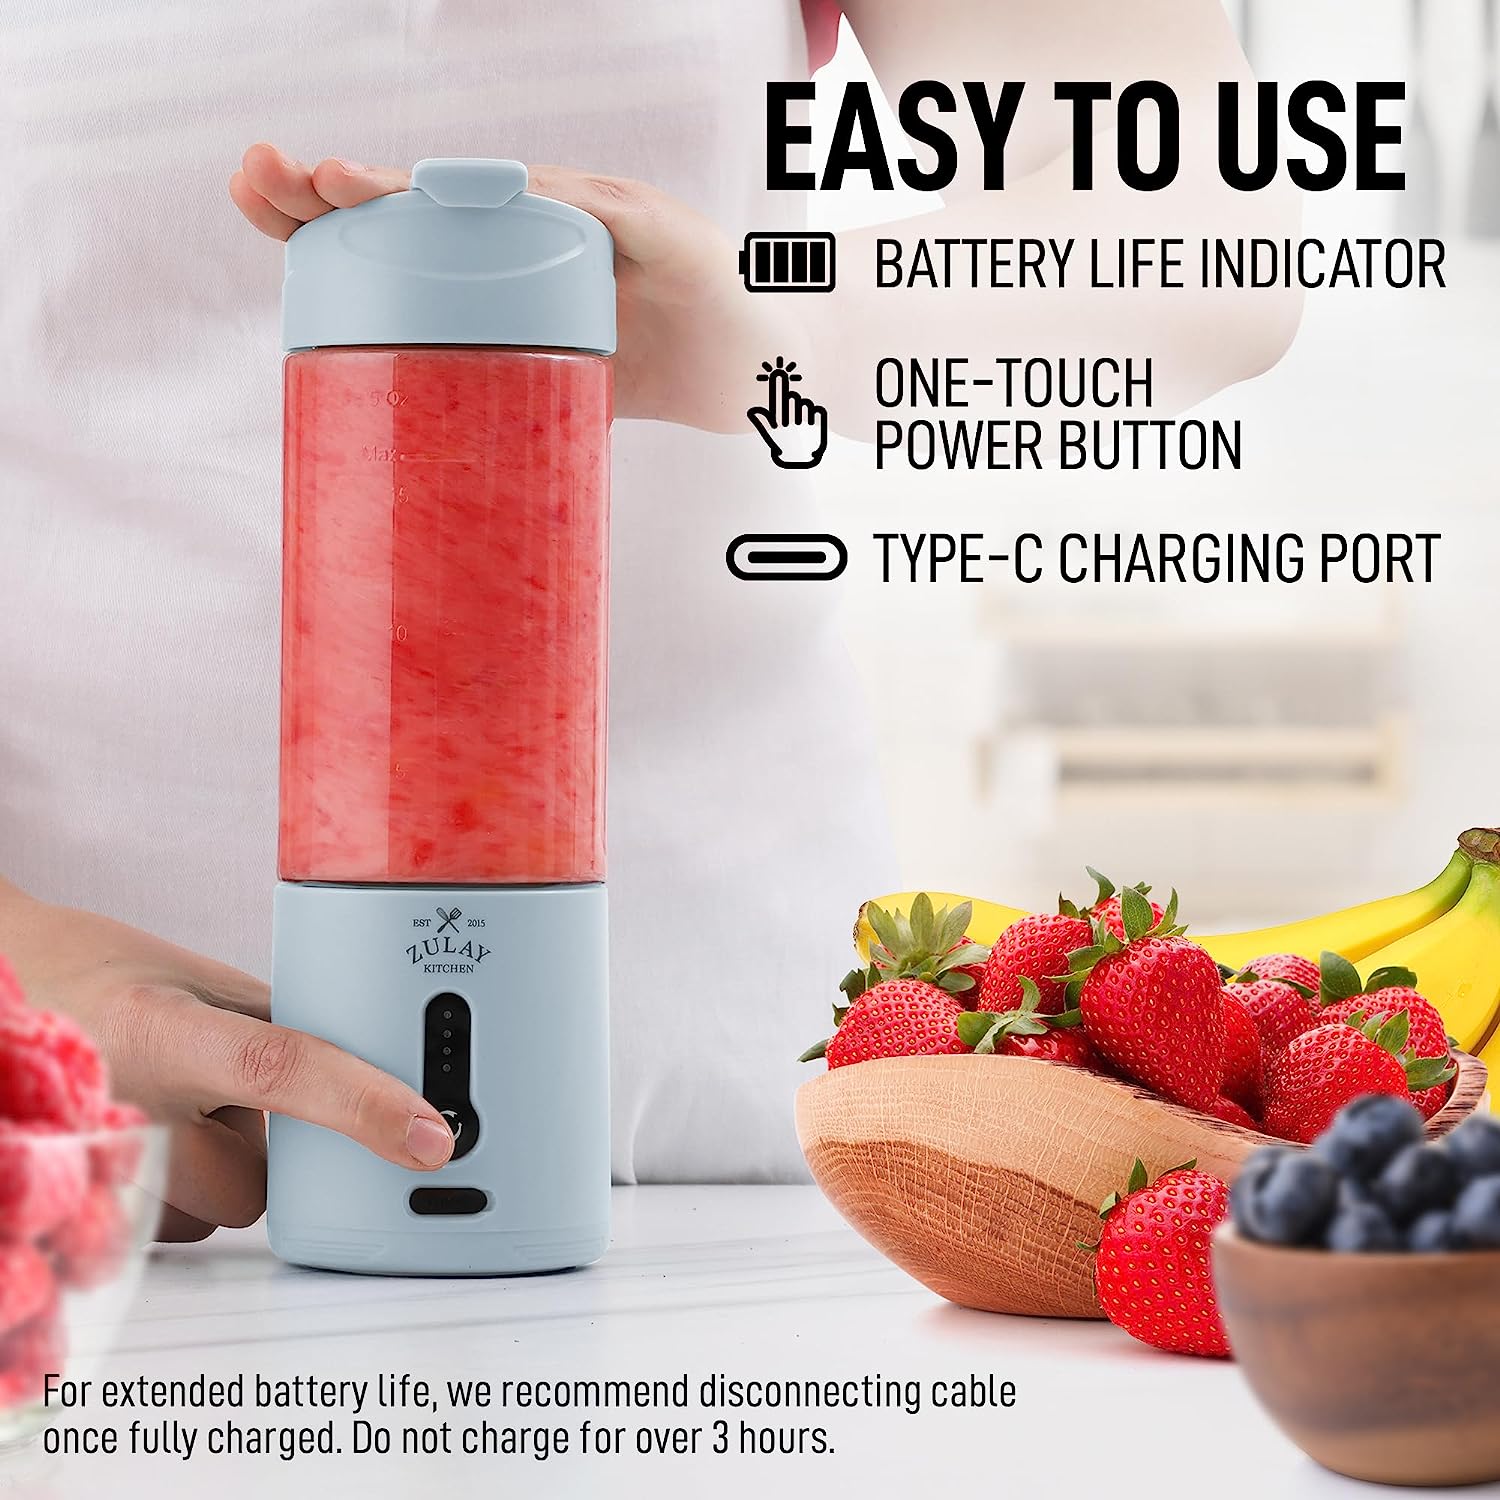 Mini Portable Blender Juicer Electric Orange Juicer Kitchen